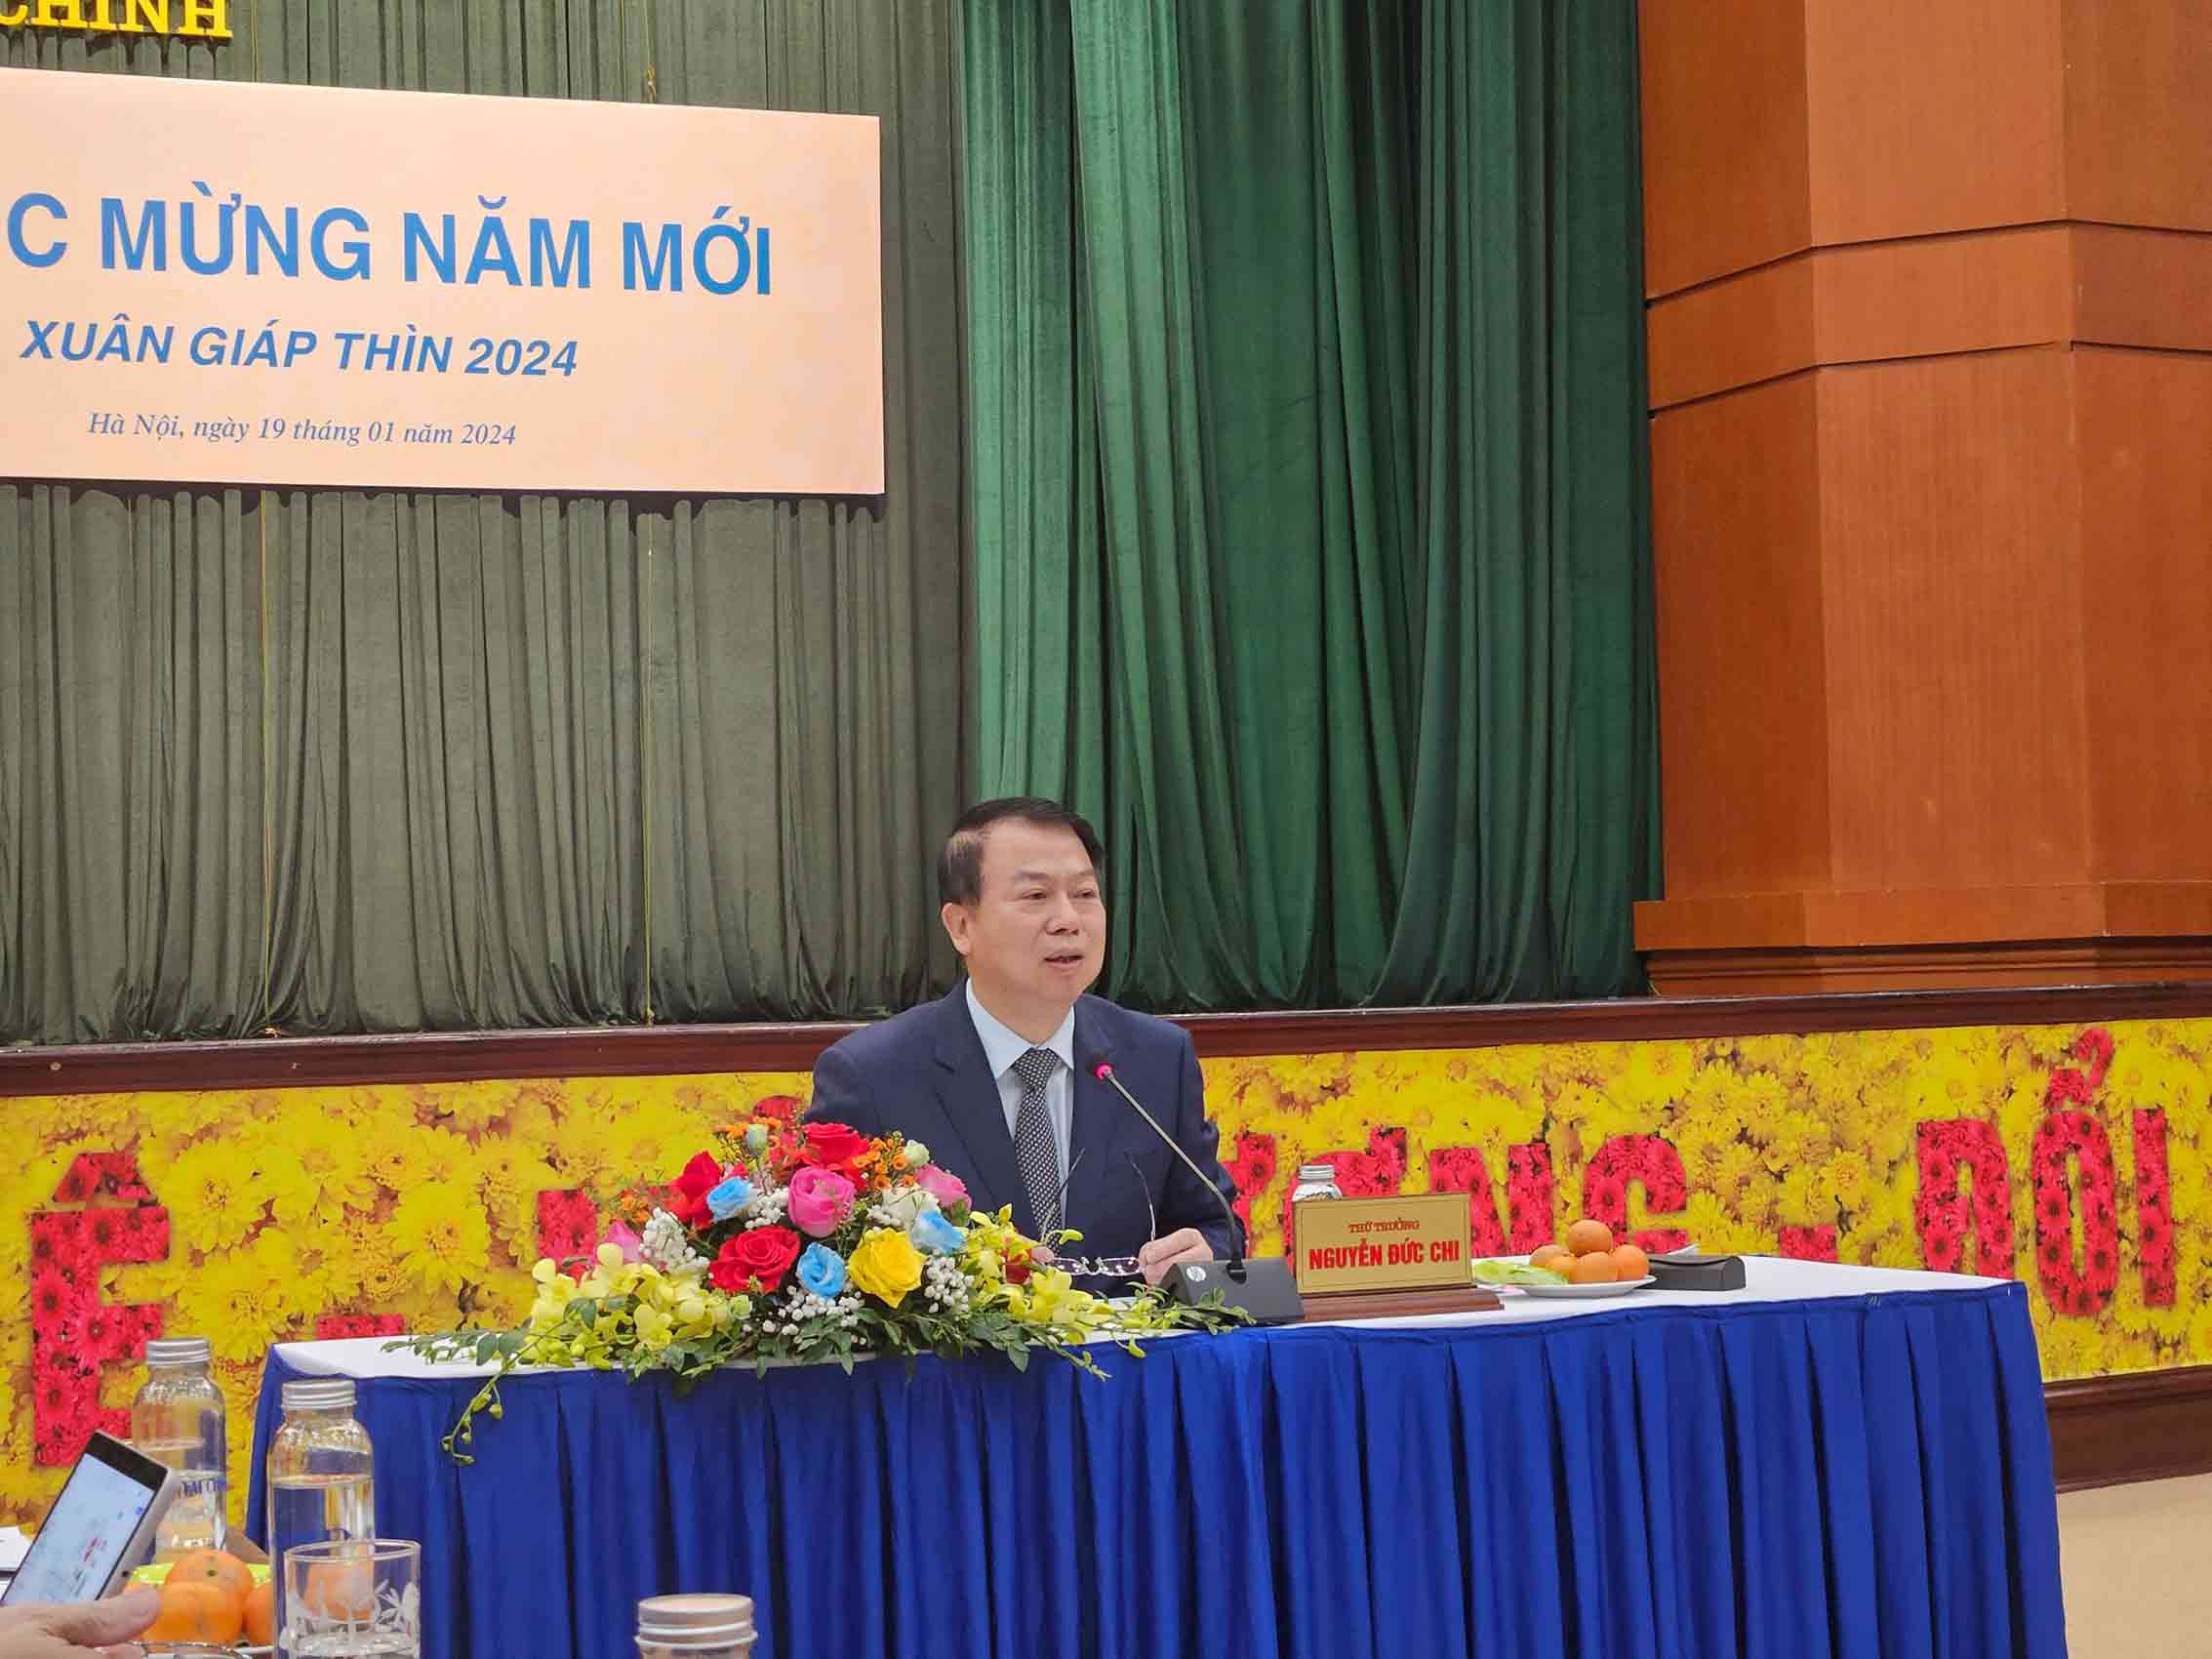 Thứ trưởng Nguyễn Đức Chi phát biểu tại buổi họp báo. Ảnh: Minh Ánh.